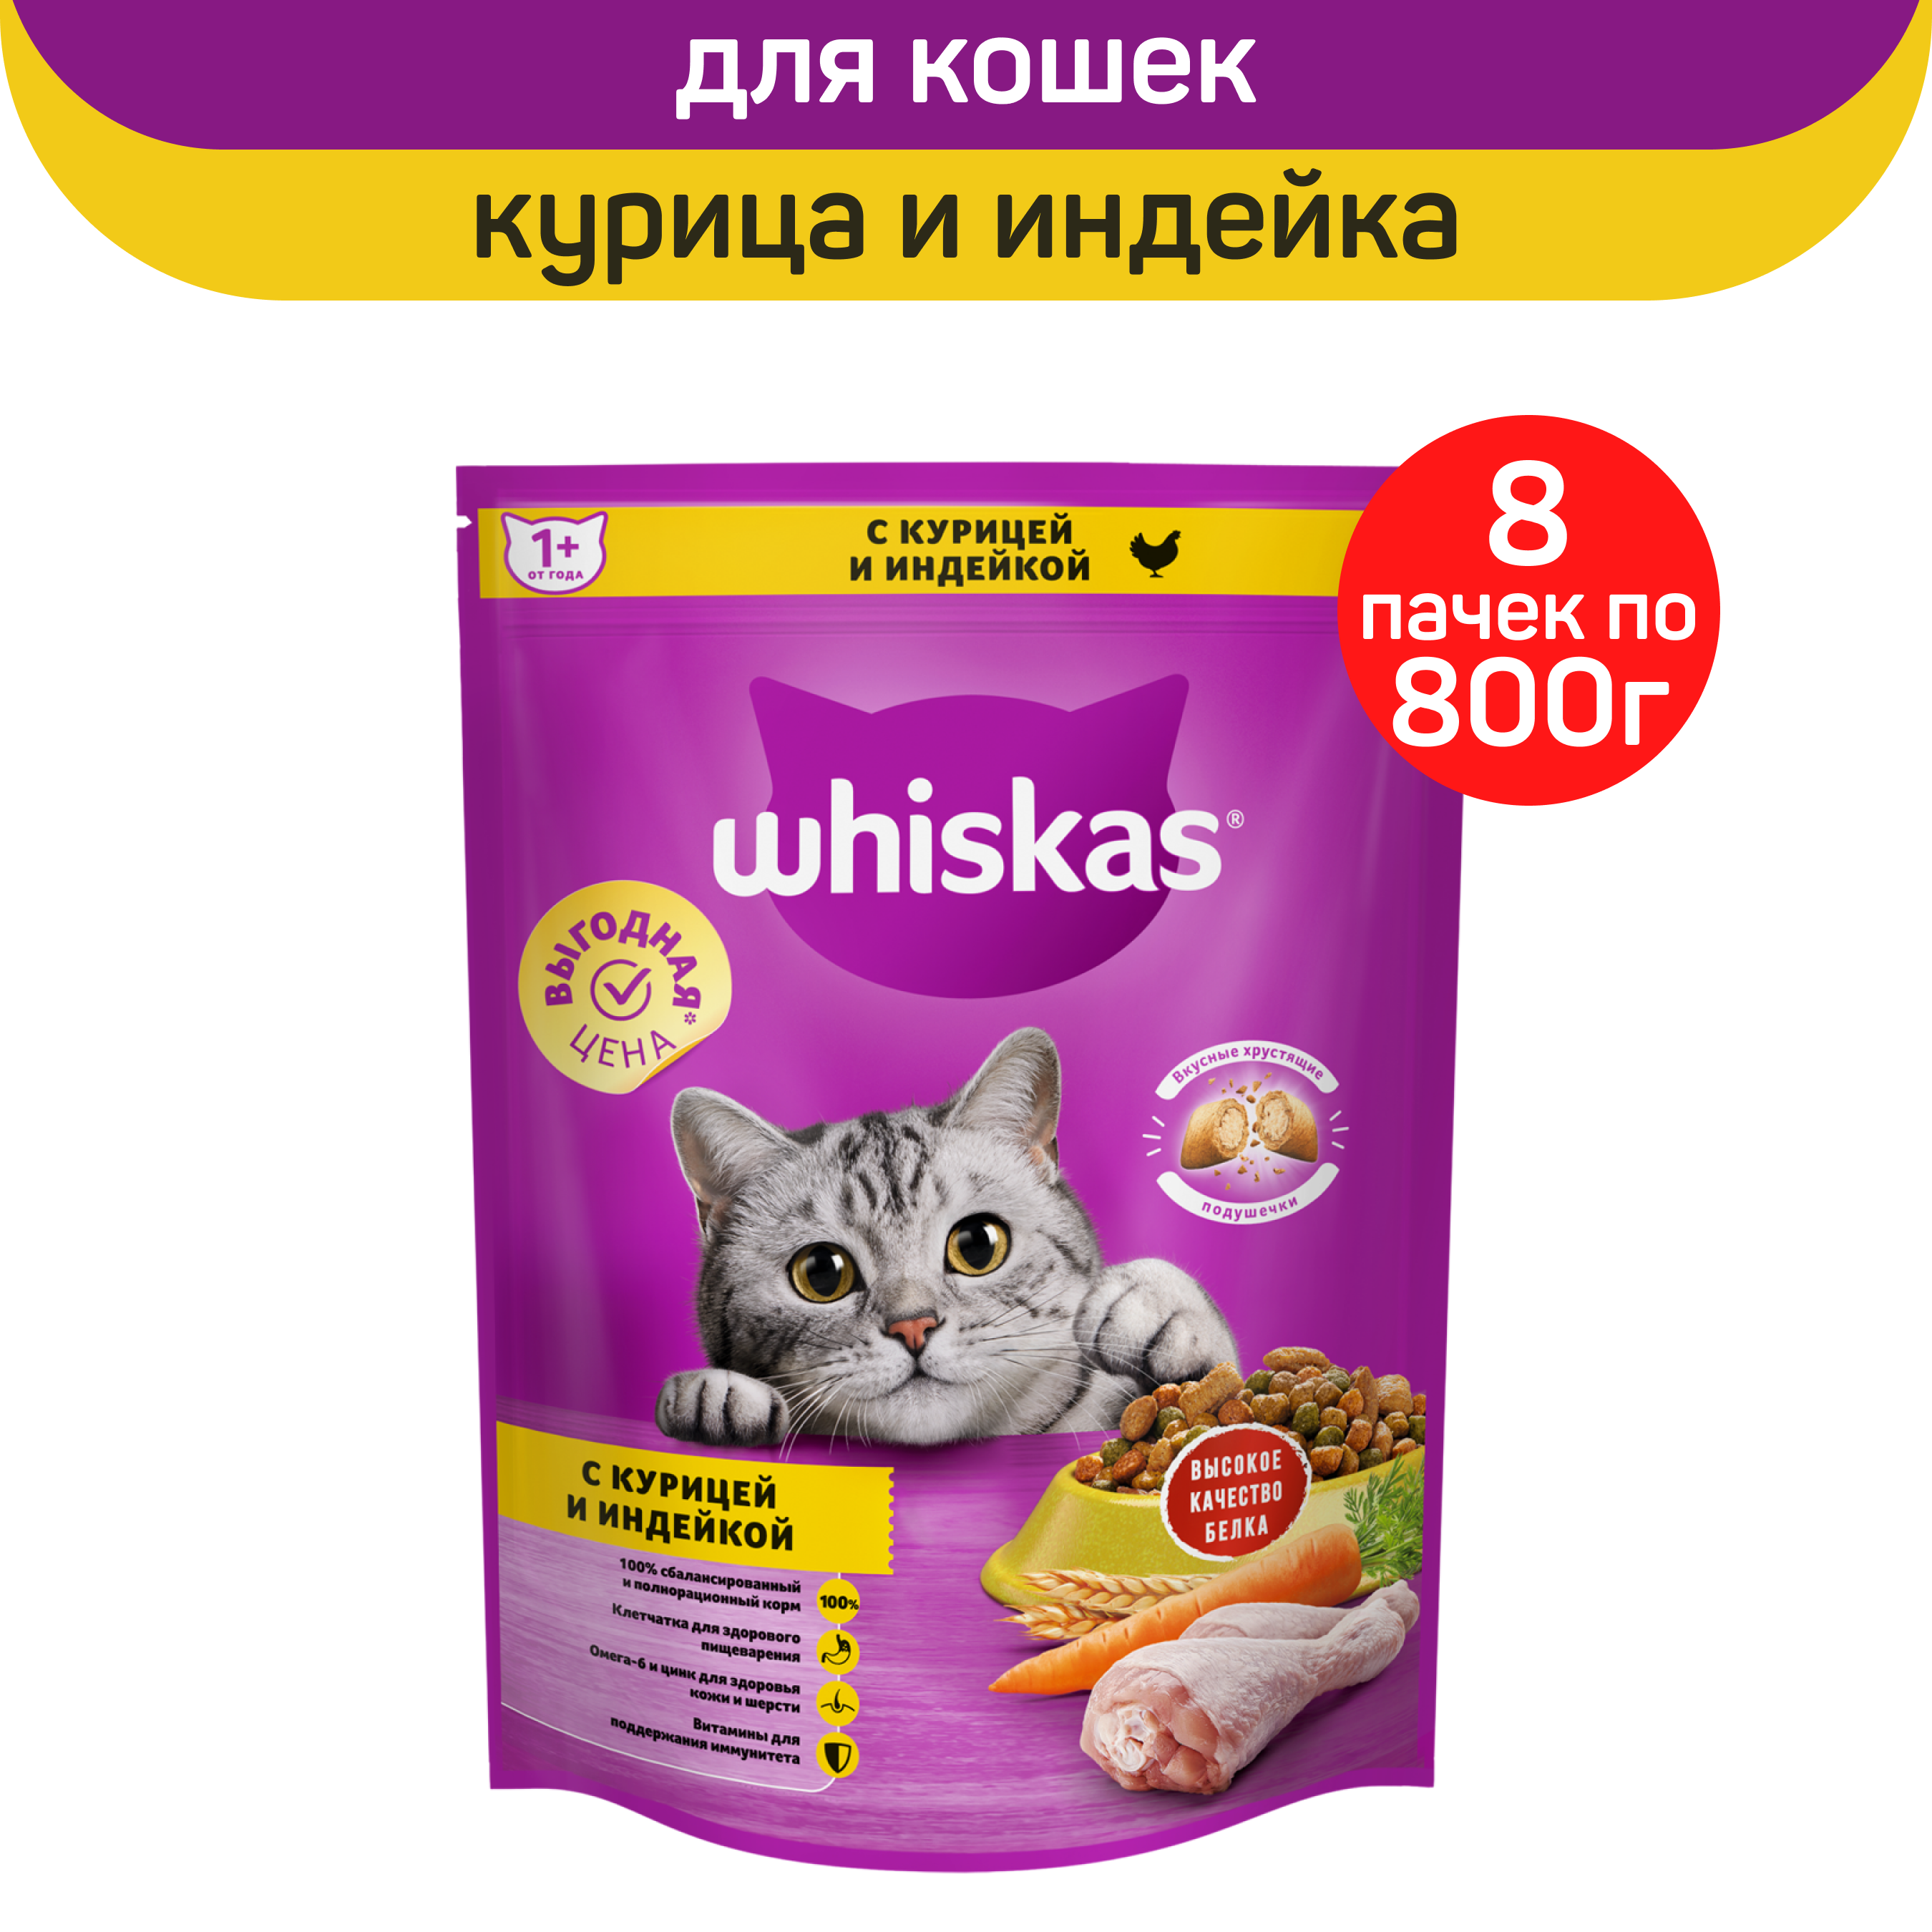 Сухой корм для кошек Whiskas, для взрослых, подушечки с курицей и индейкой, 8 шт по 800 г